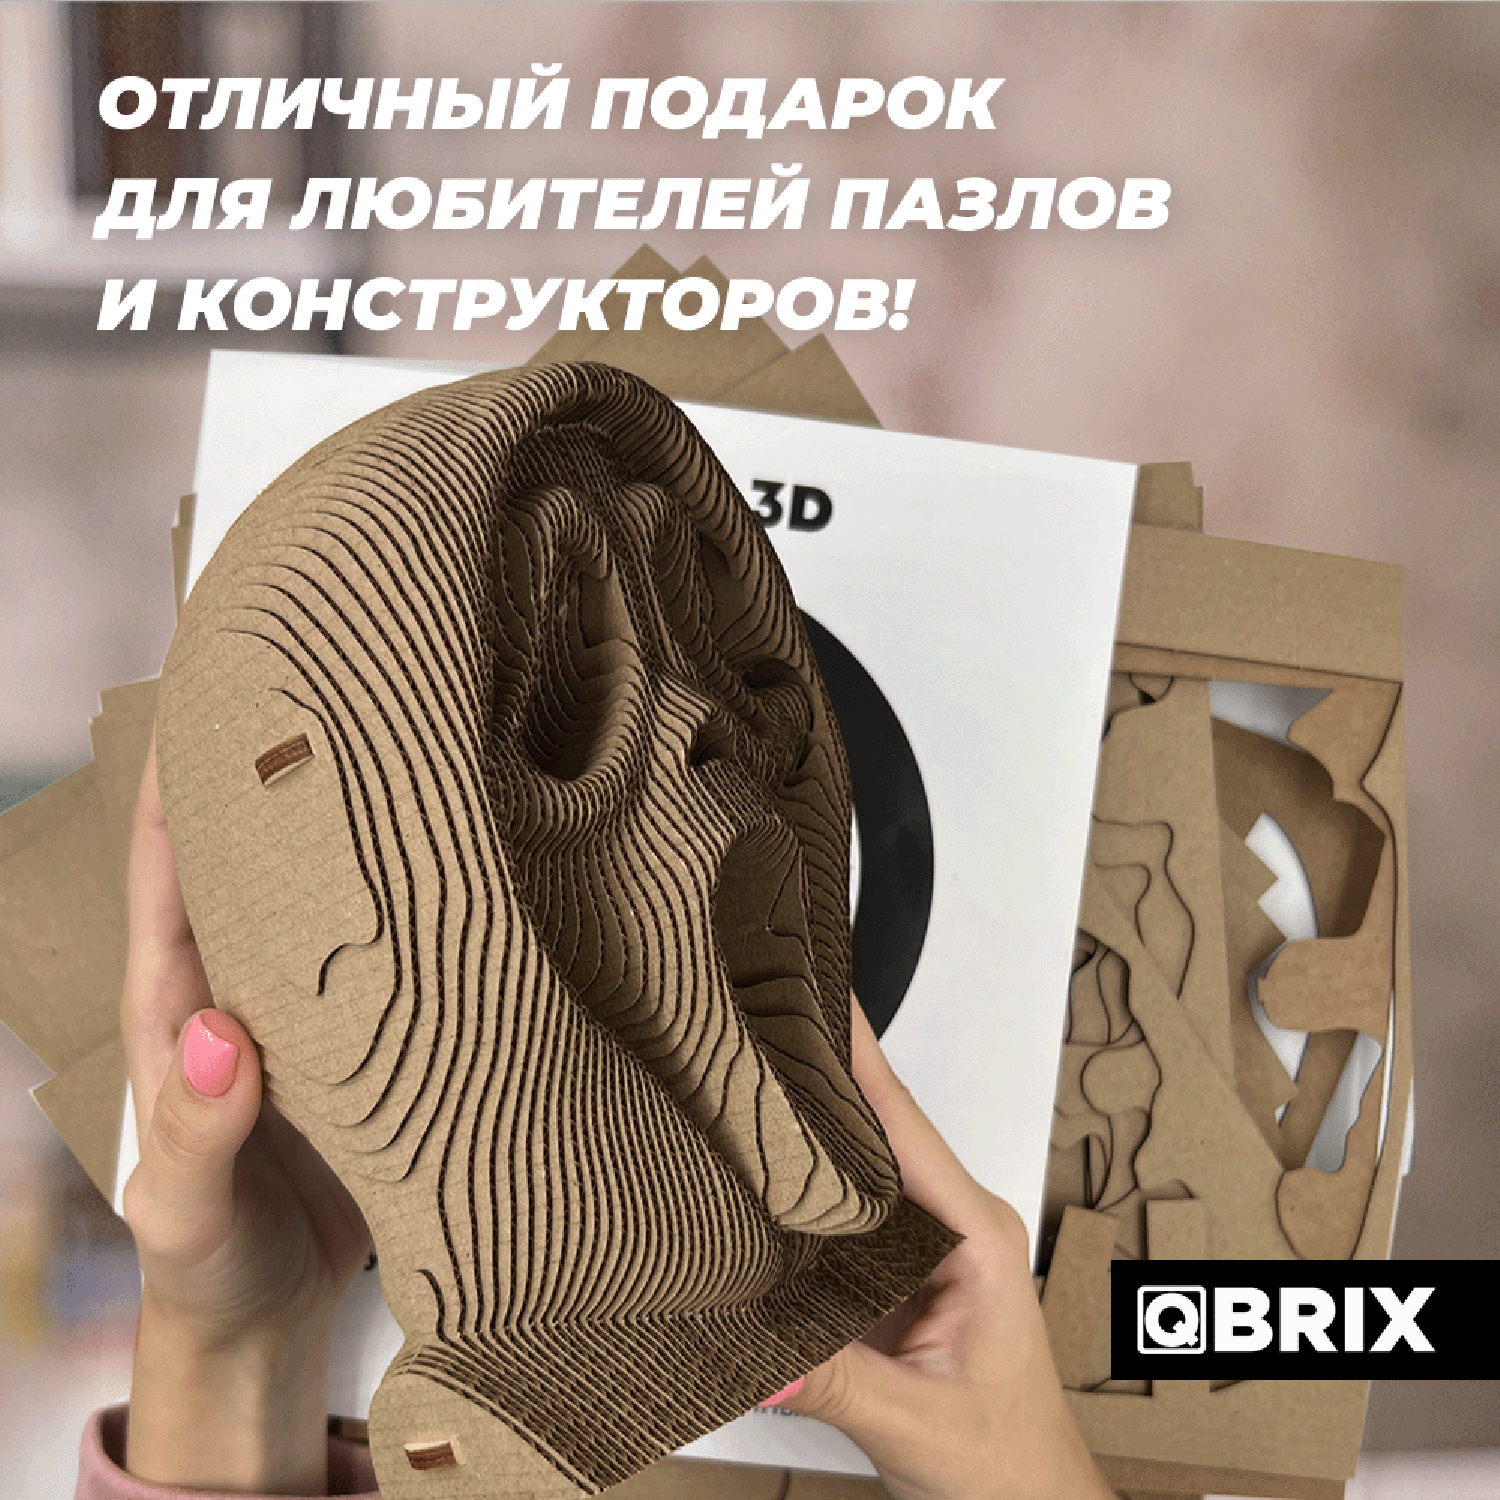 Конструктор QBRIX 3D картонный Крик души 20009 20009 - фото 8